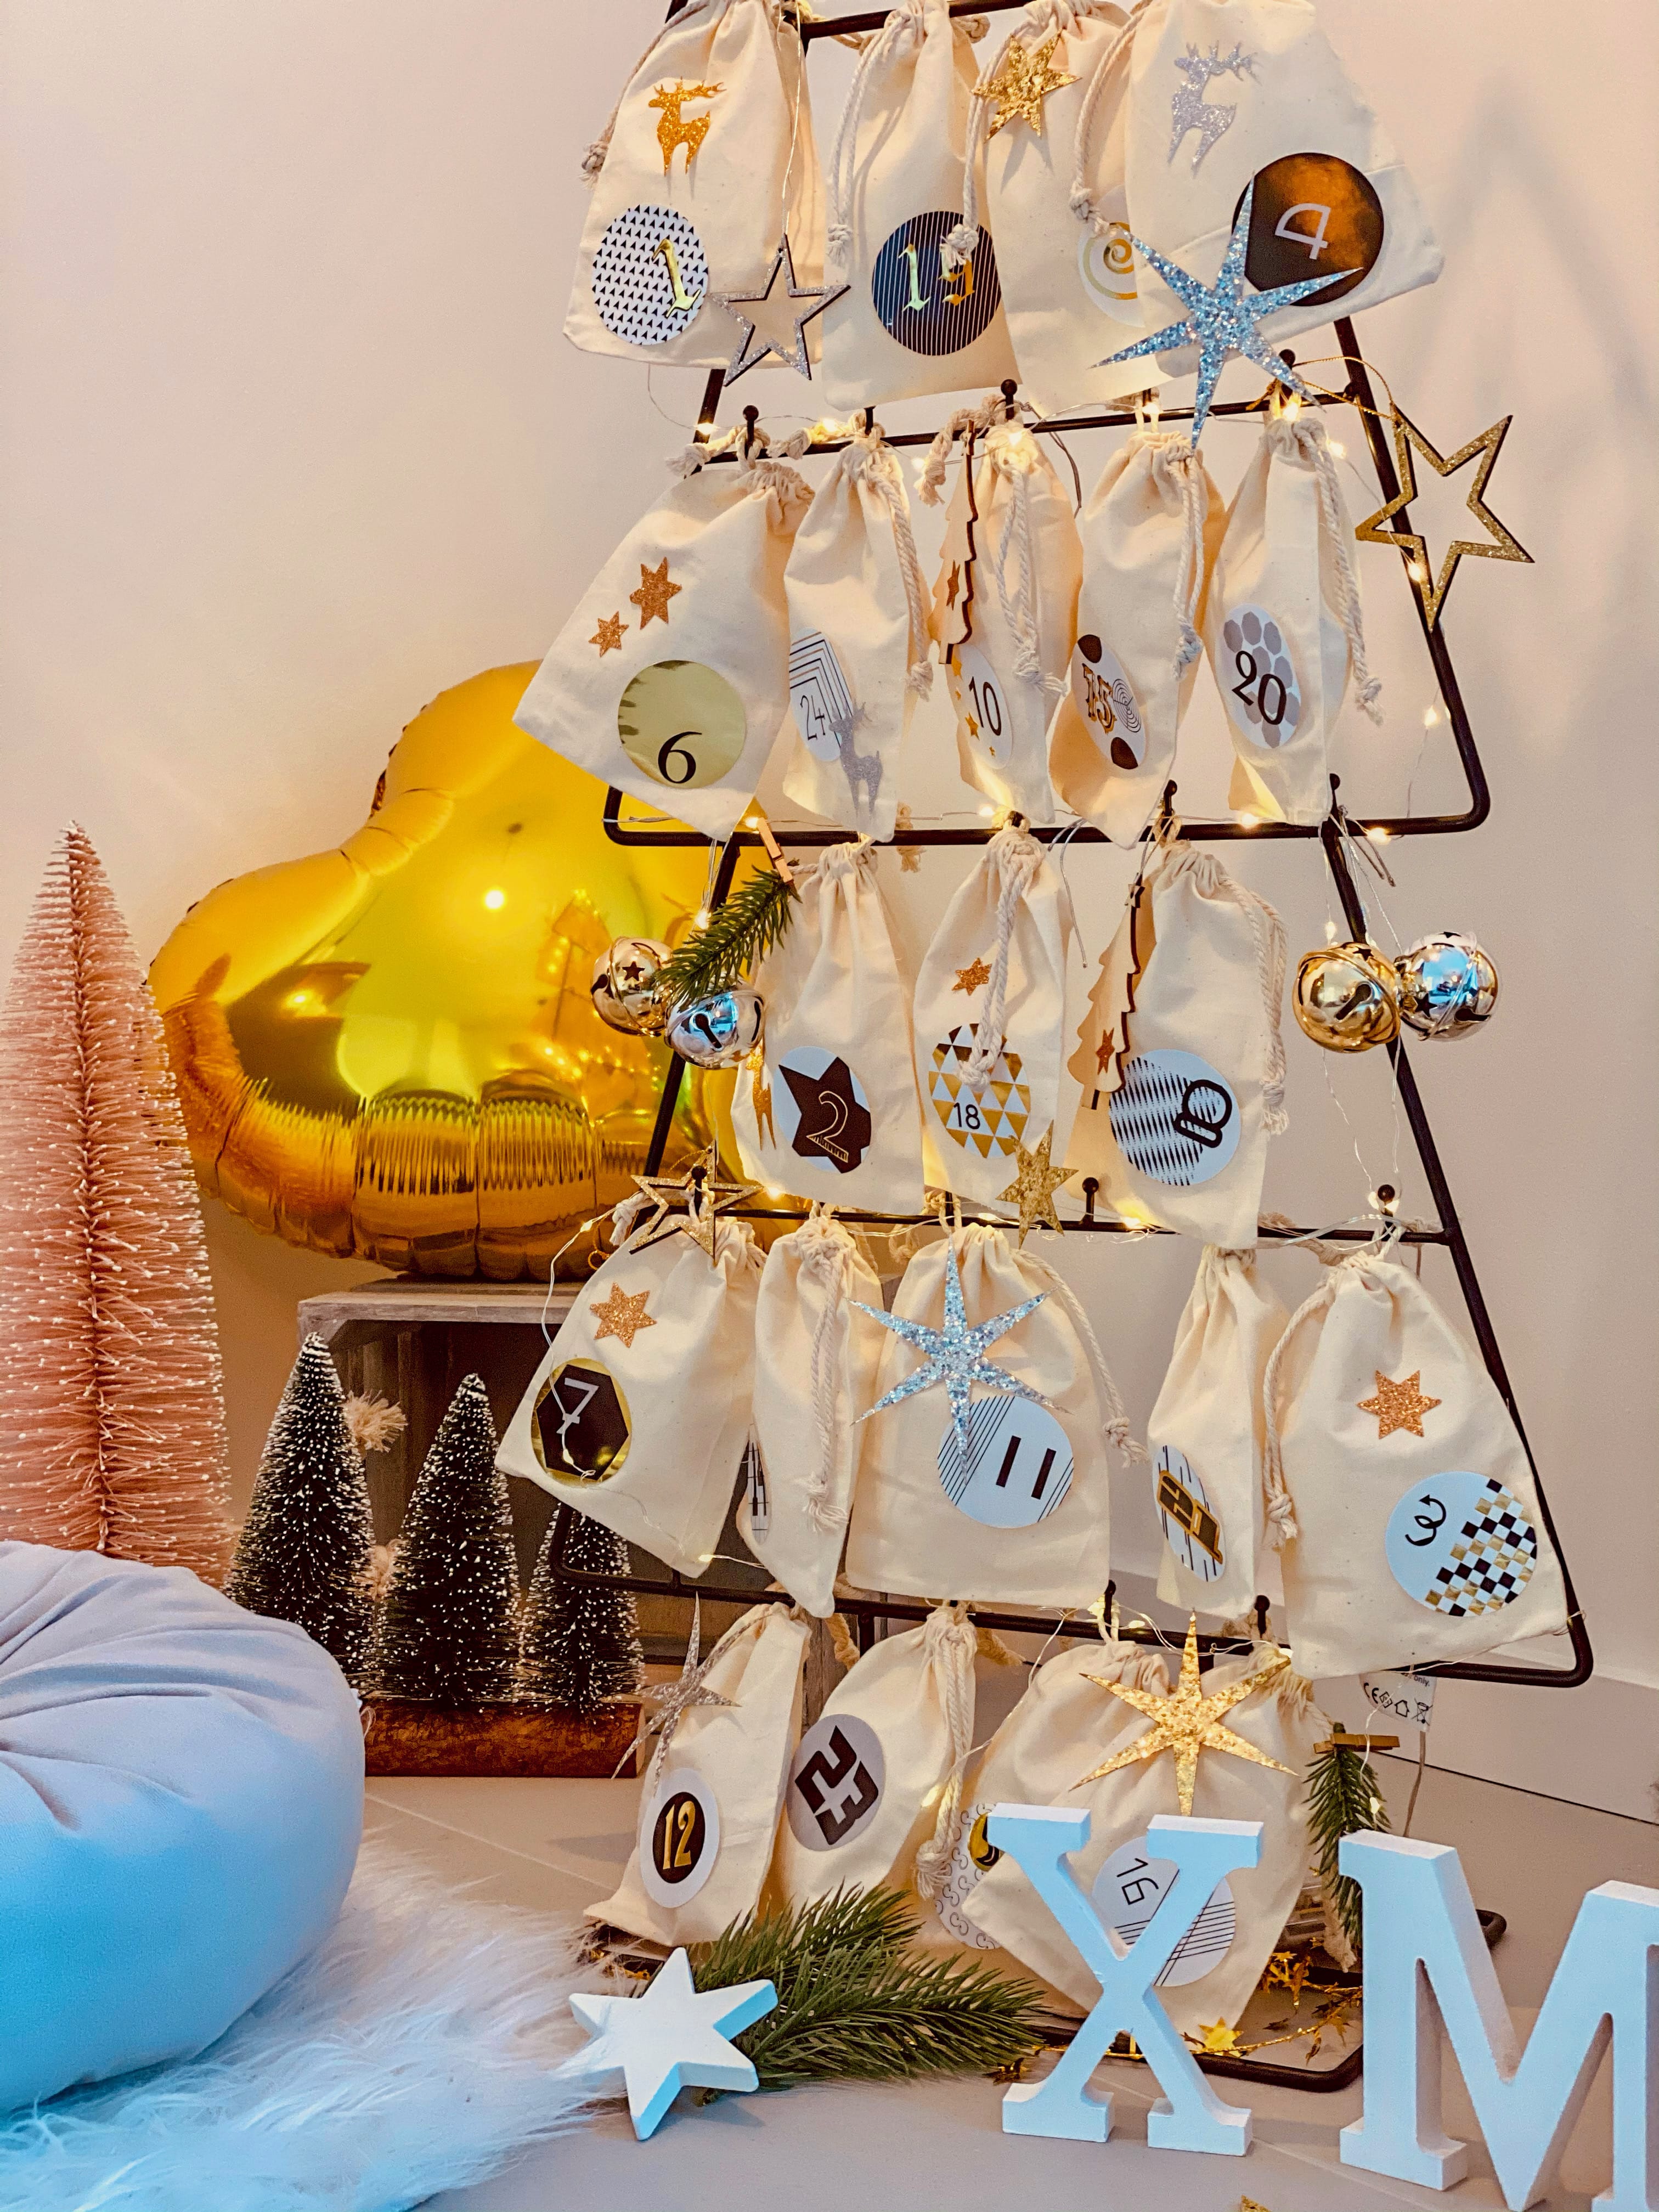 24 Sterne Sticker mit Pailletten Stern Aufkleber Glitzernd Weihnachtsdeko  Deko Weihnachten - gold